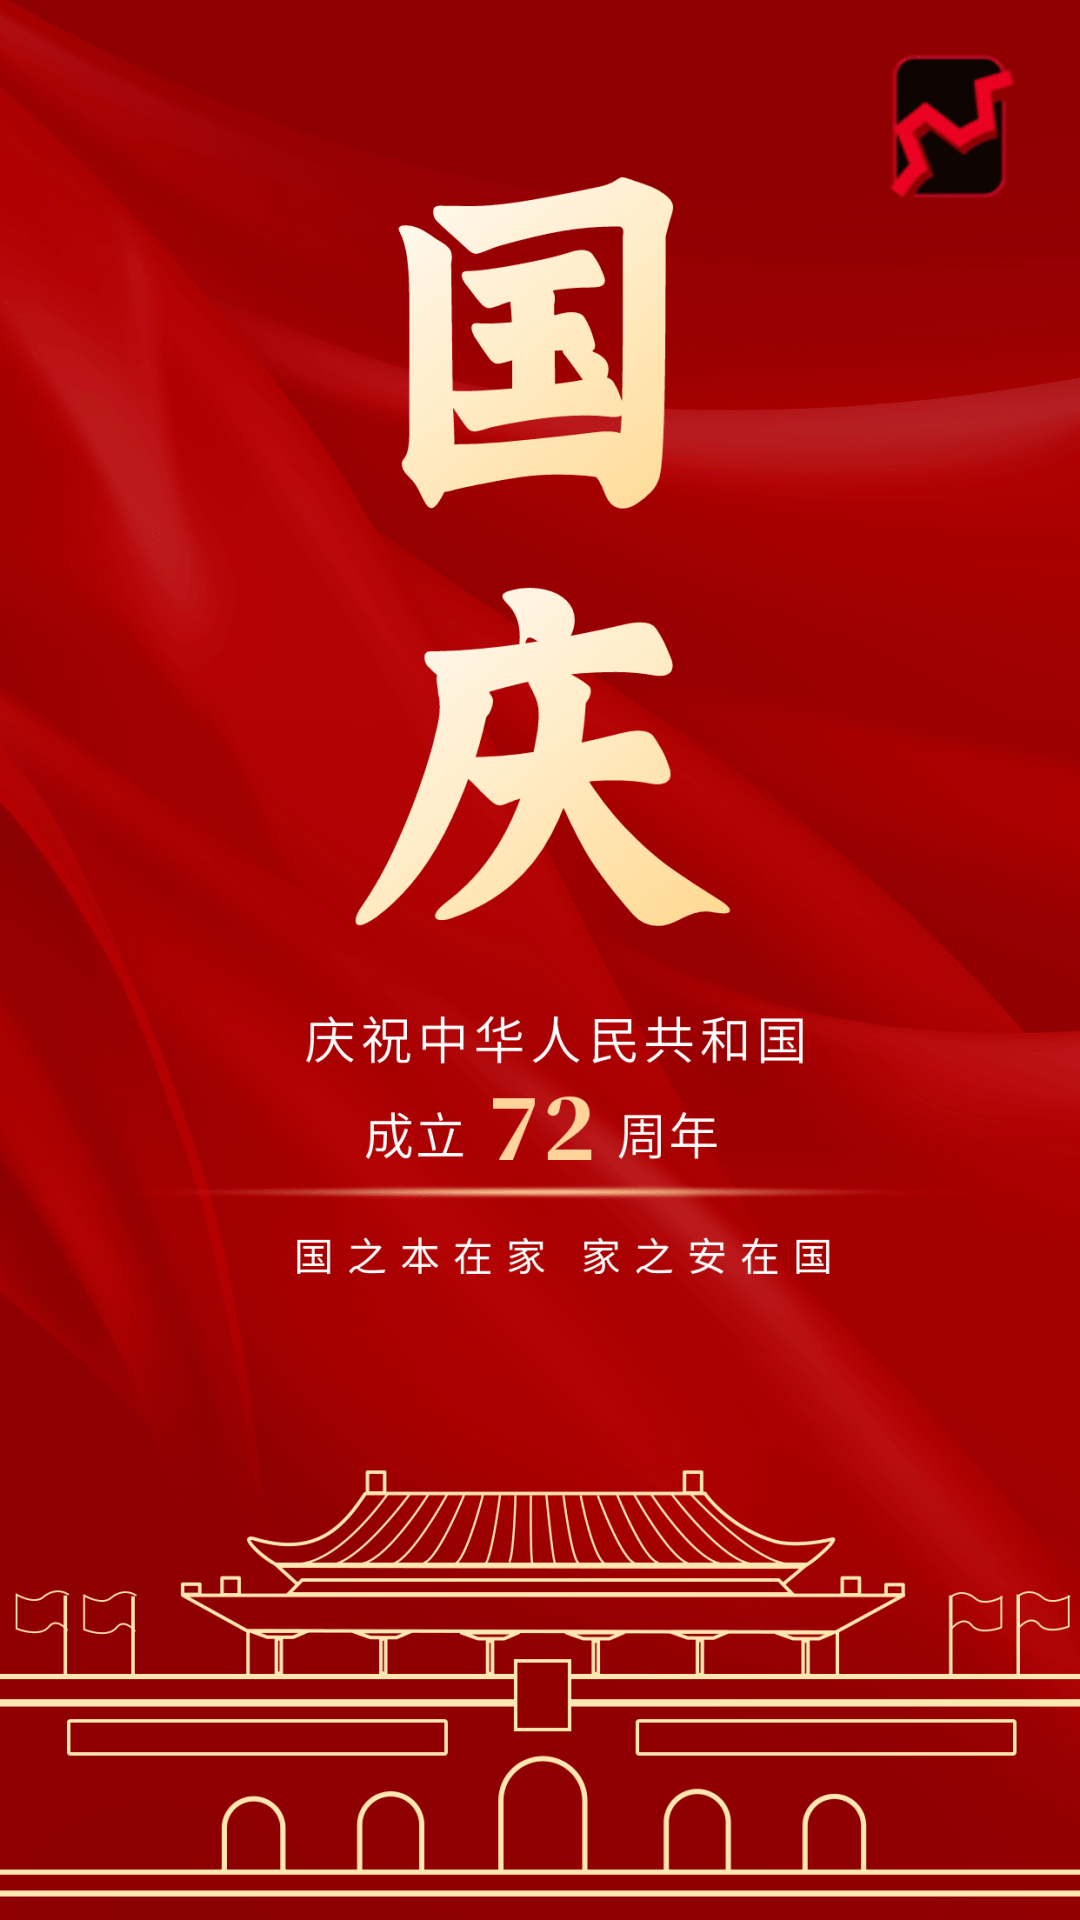 举国同庆,盛世华诞|热烈庆祝新中国成立72周年